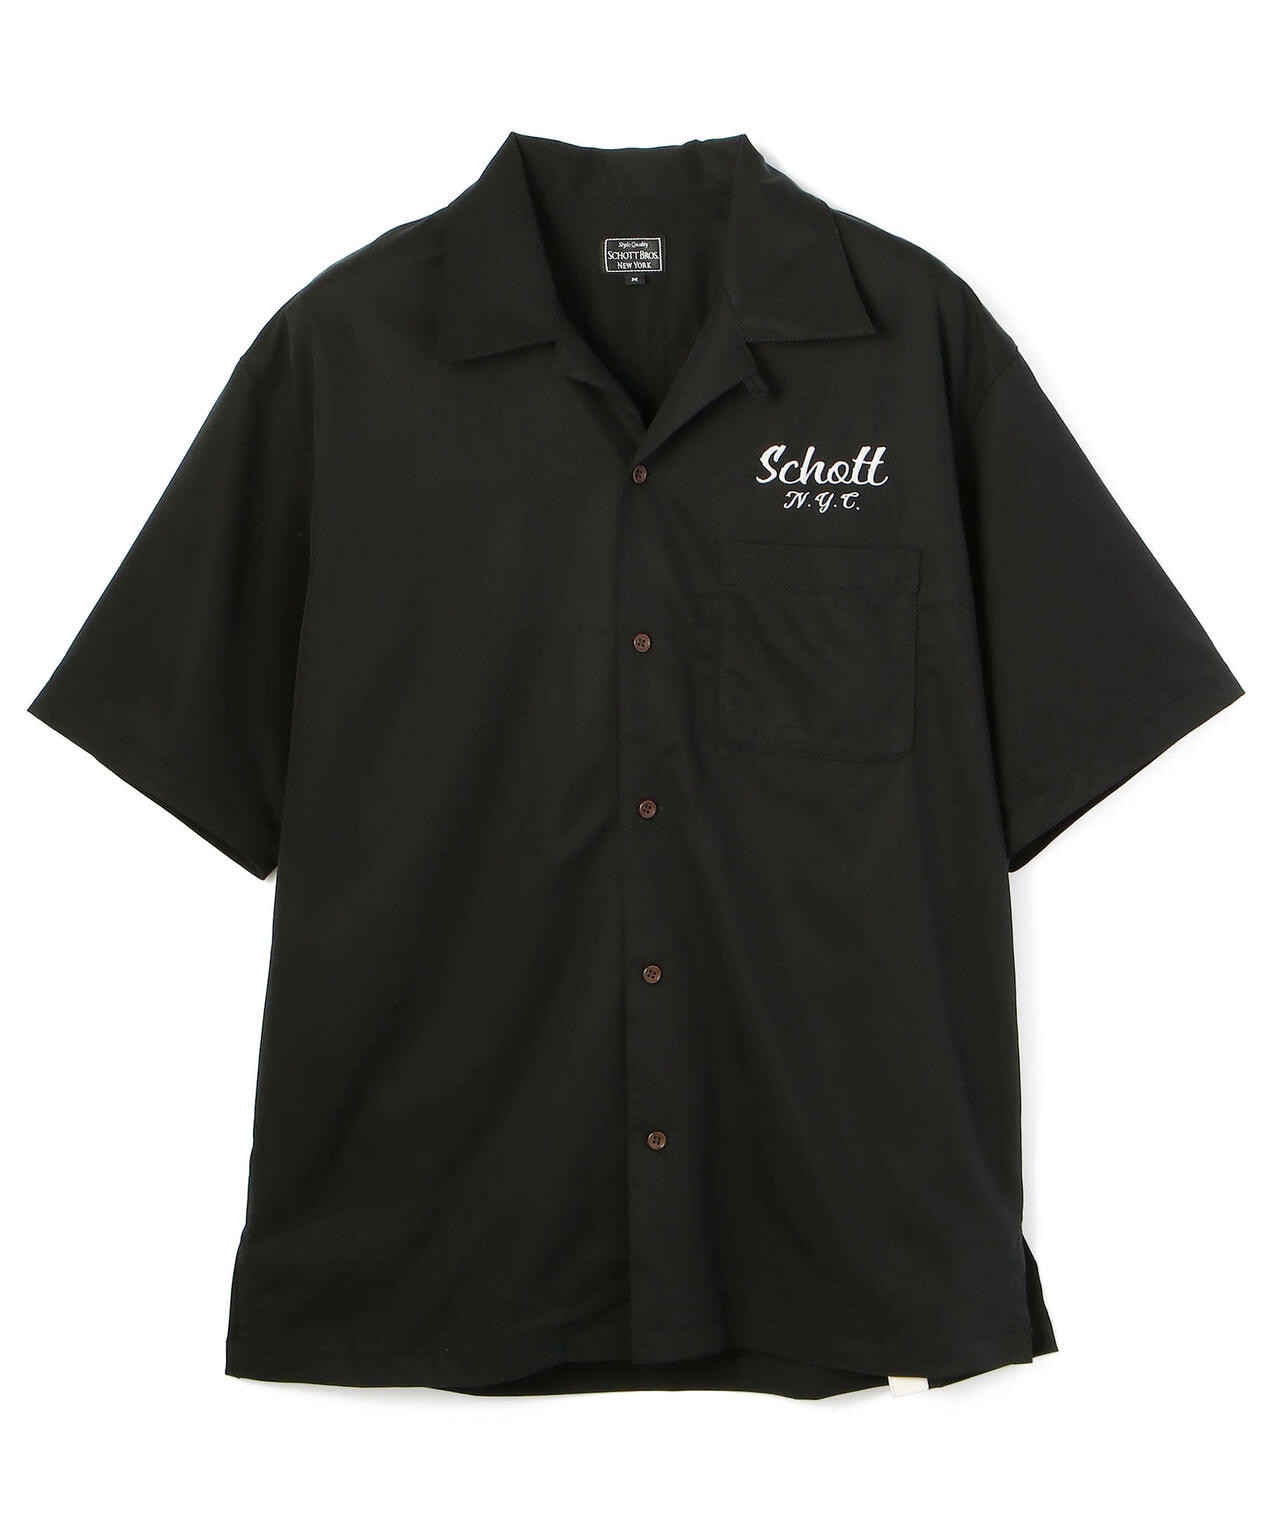 希少 SCHOTT ショット 刺繍 半袖 ボーリングシャツ 黒 Lサイズ多少の使用感があるが綺麗な状態